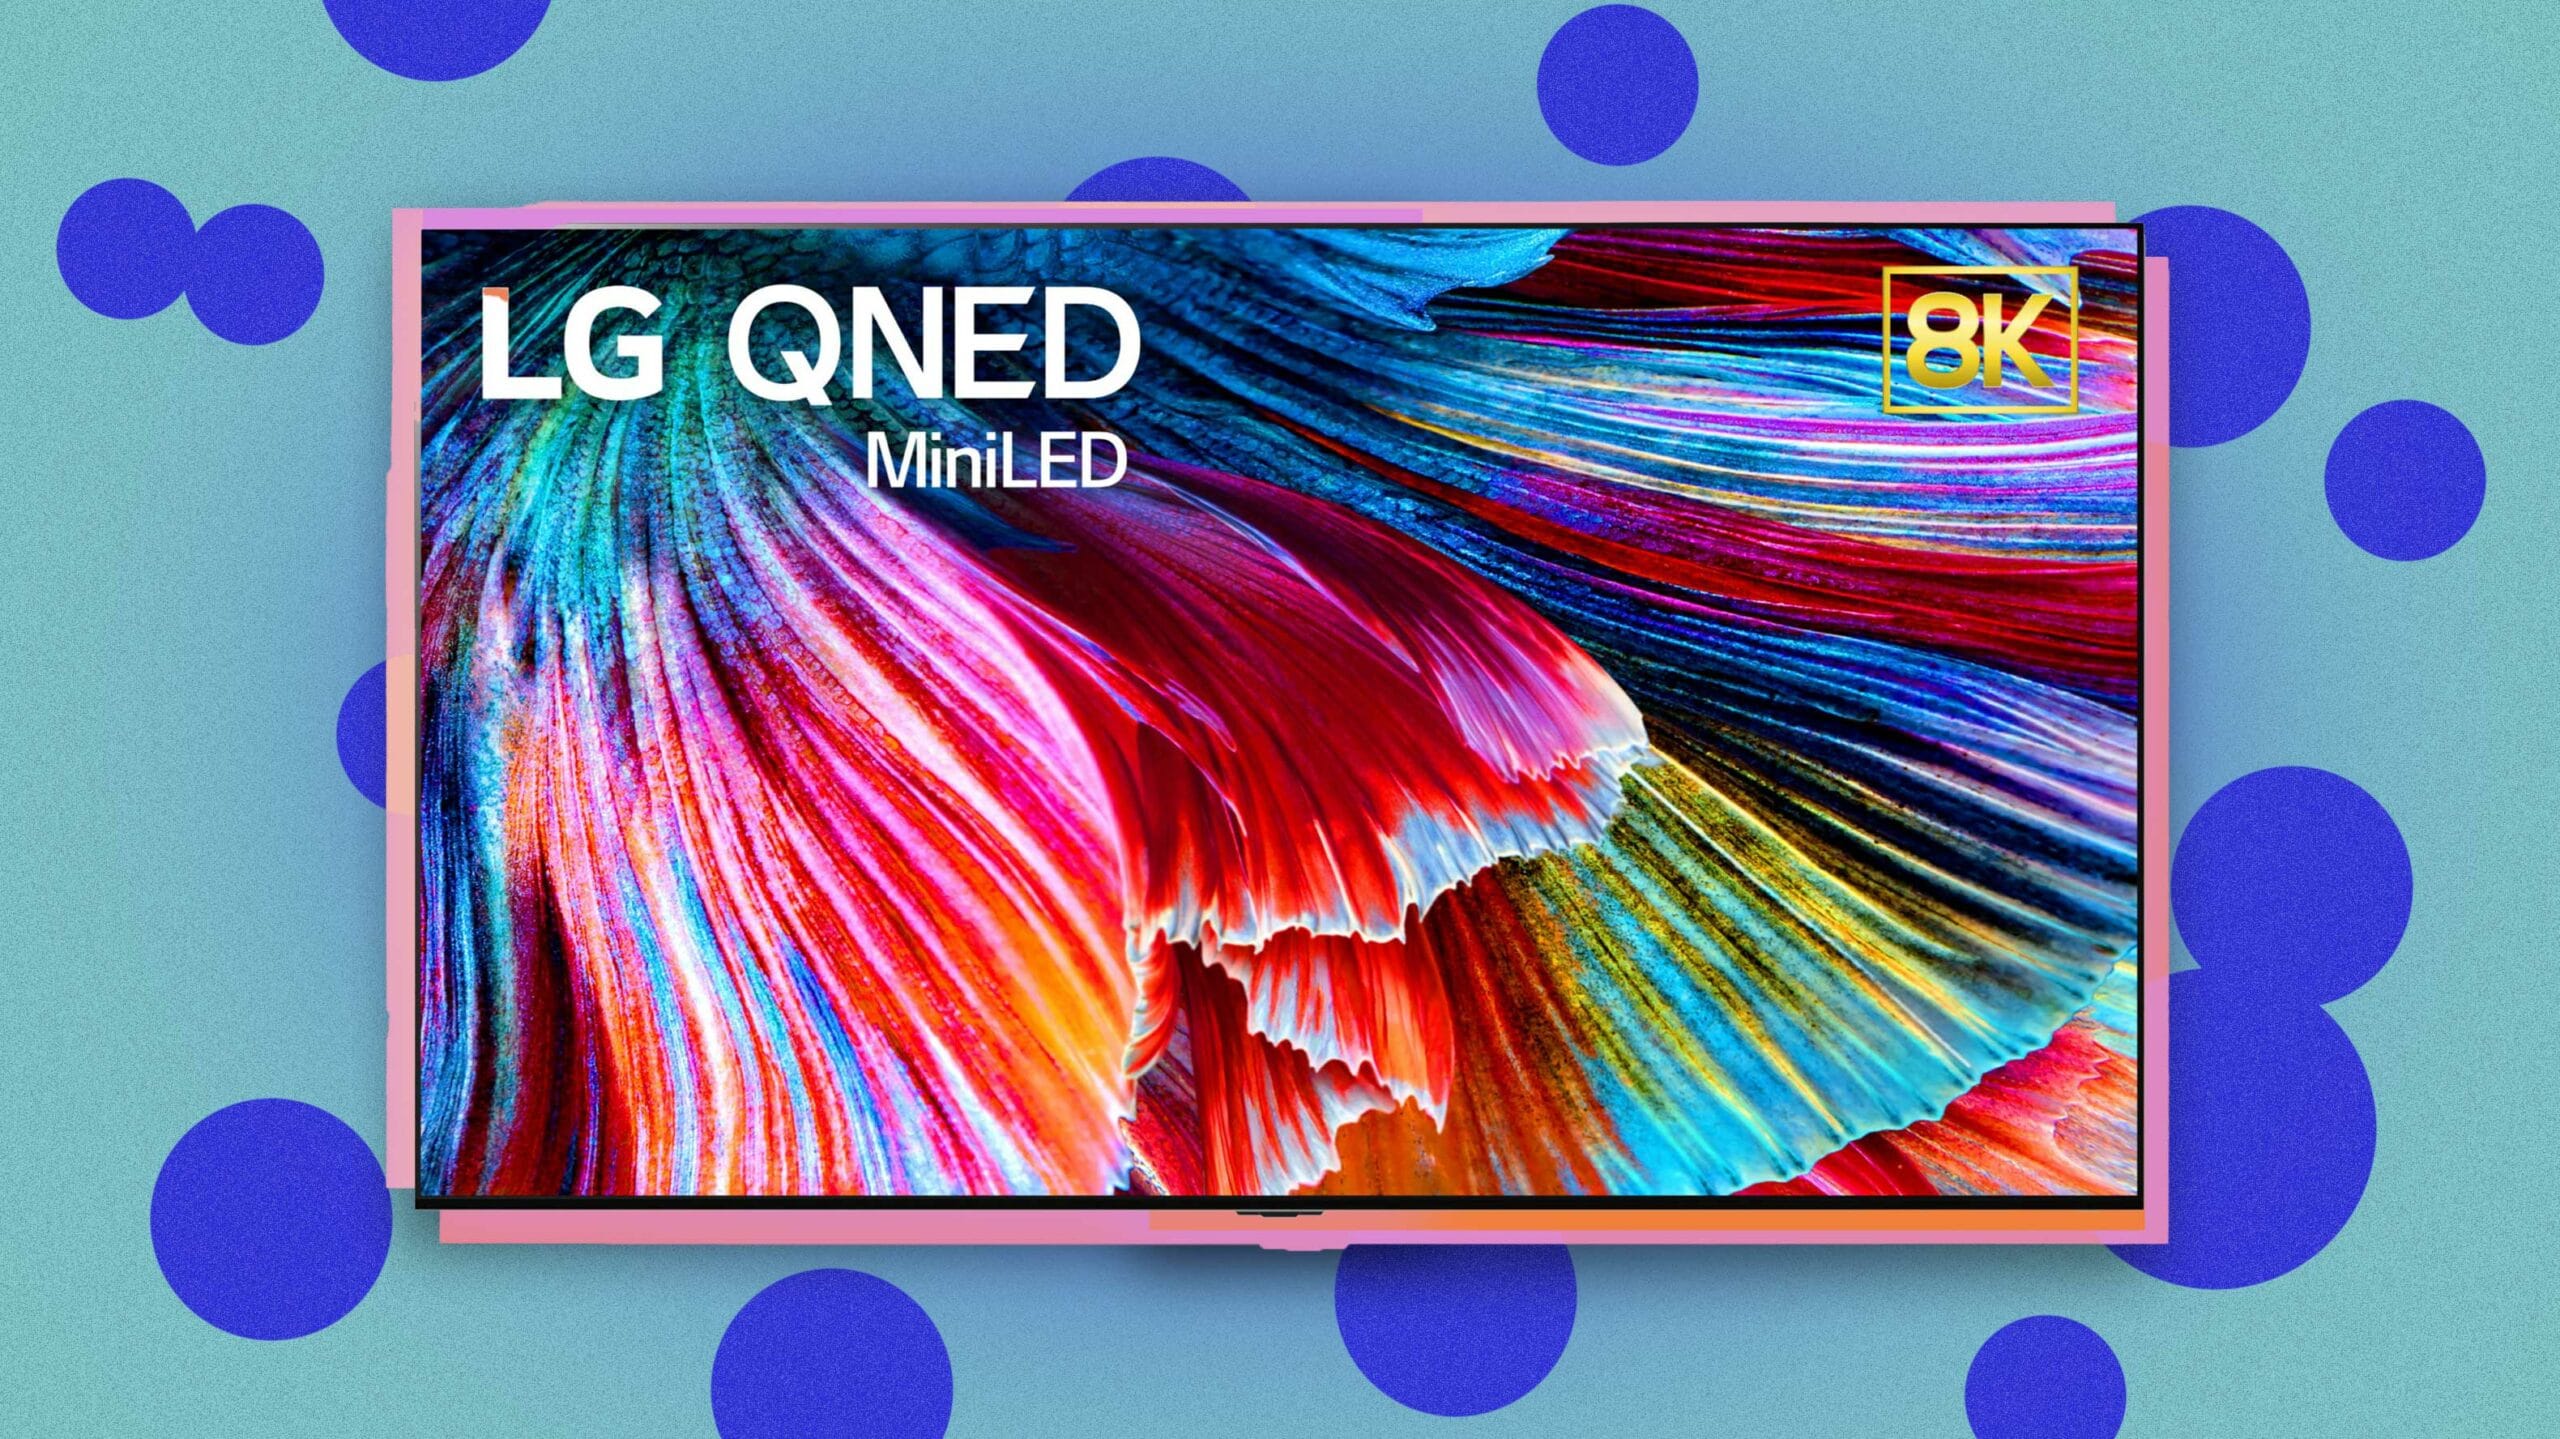 TV QNED mới của LG sẽ có tới 30,000 bóng đèn LED phía sau màn hình